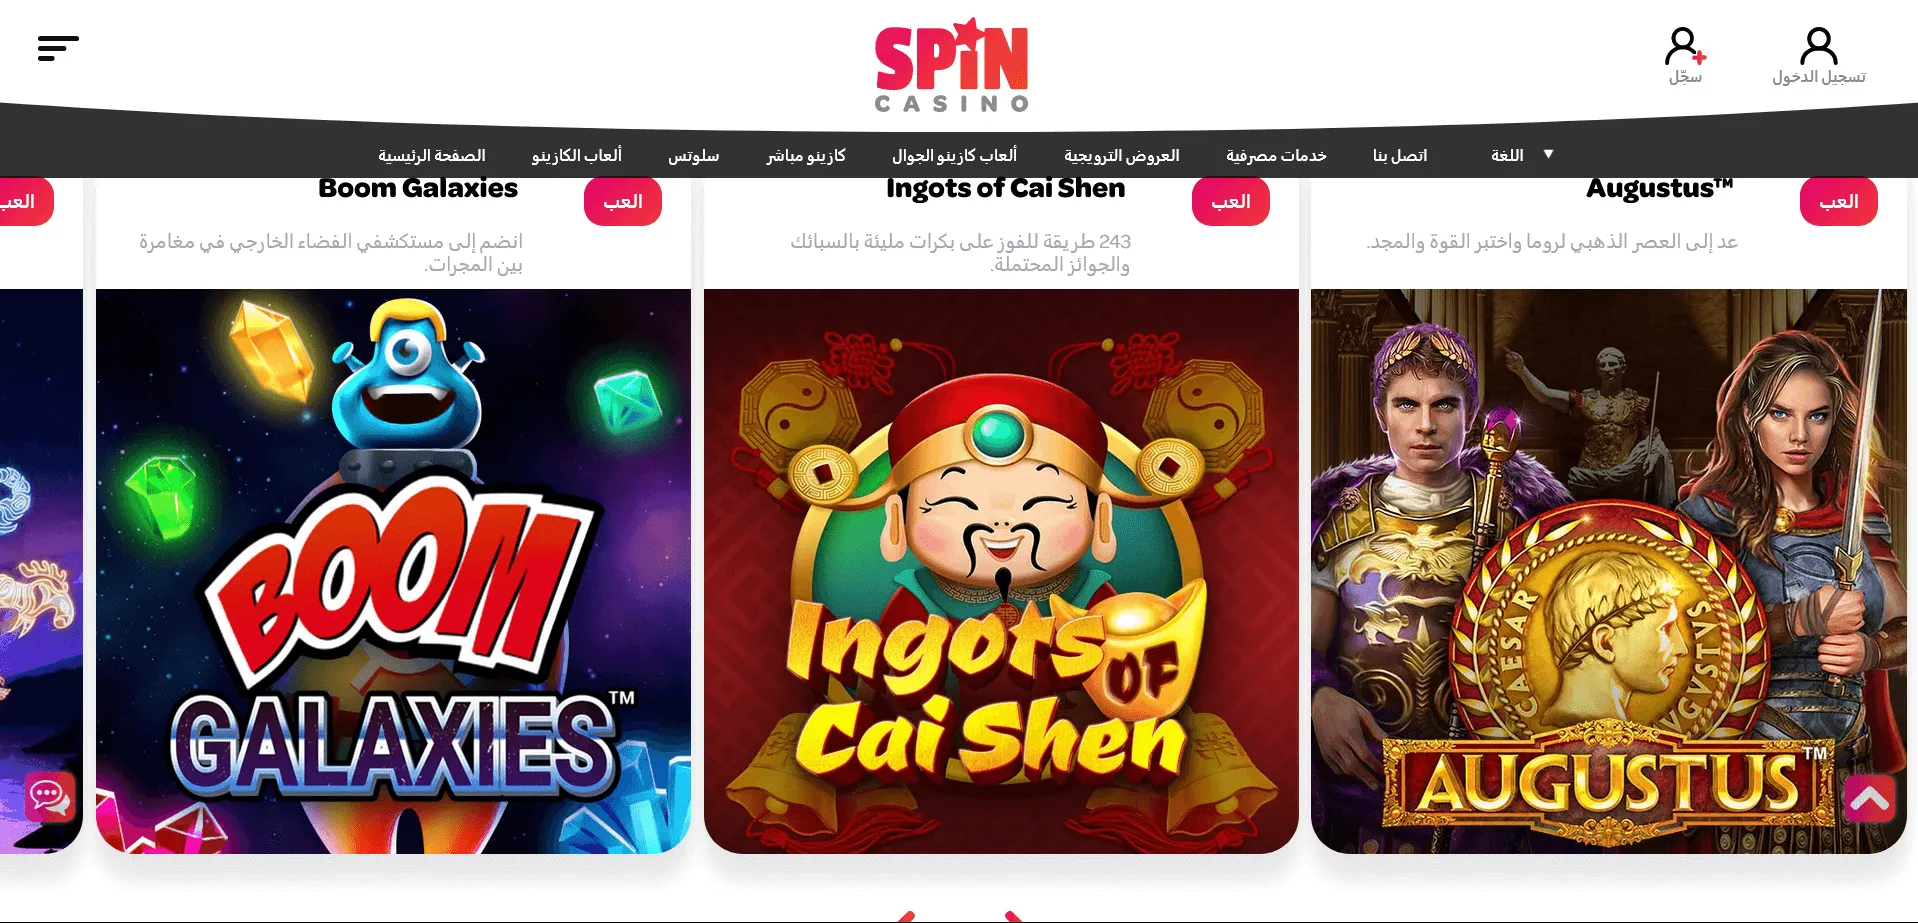 مكافآت وجوائز للاعبين الجدد في Spin Casino وبرنامج الولاء